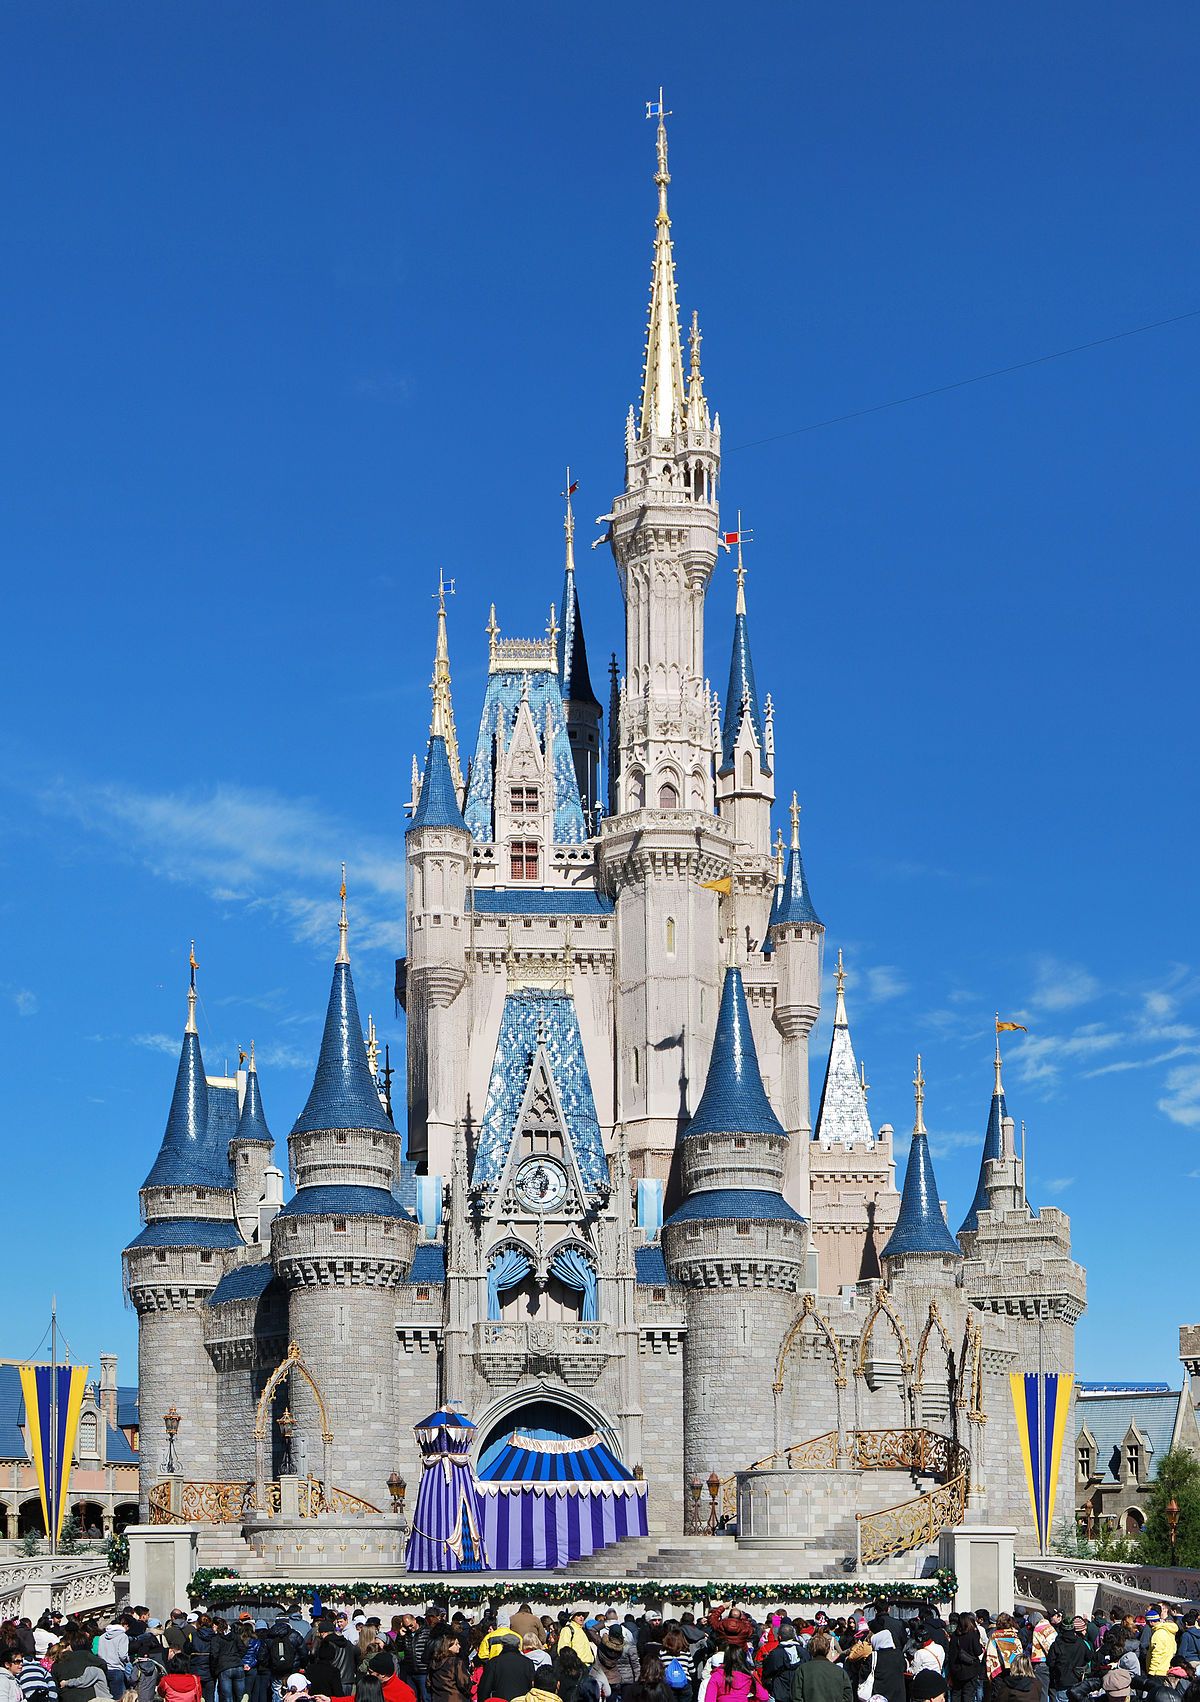 El desastre del castillo de Disney ocurrido en Estados Unidos En el año 2017,